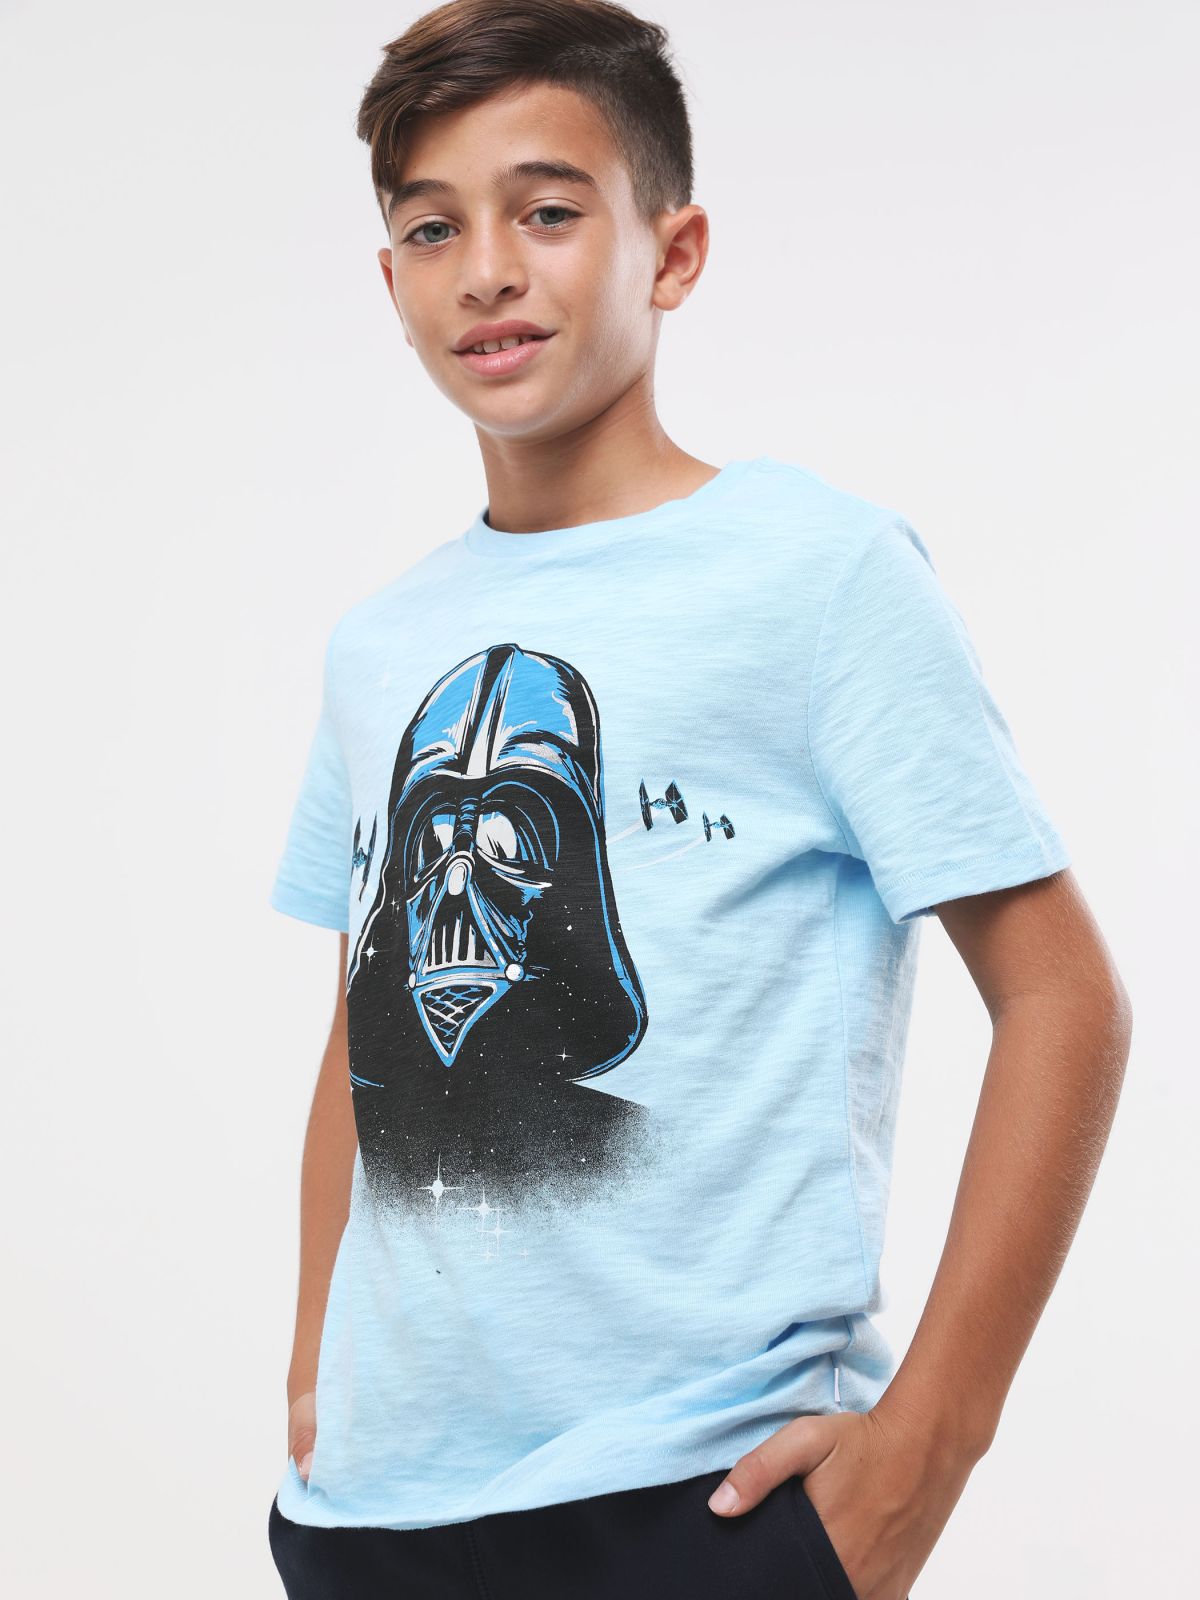  חולצת טי שירט מלאנז' עם הדפס Star Wars בחזית ומאחור של GAP